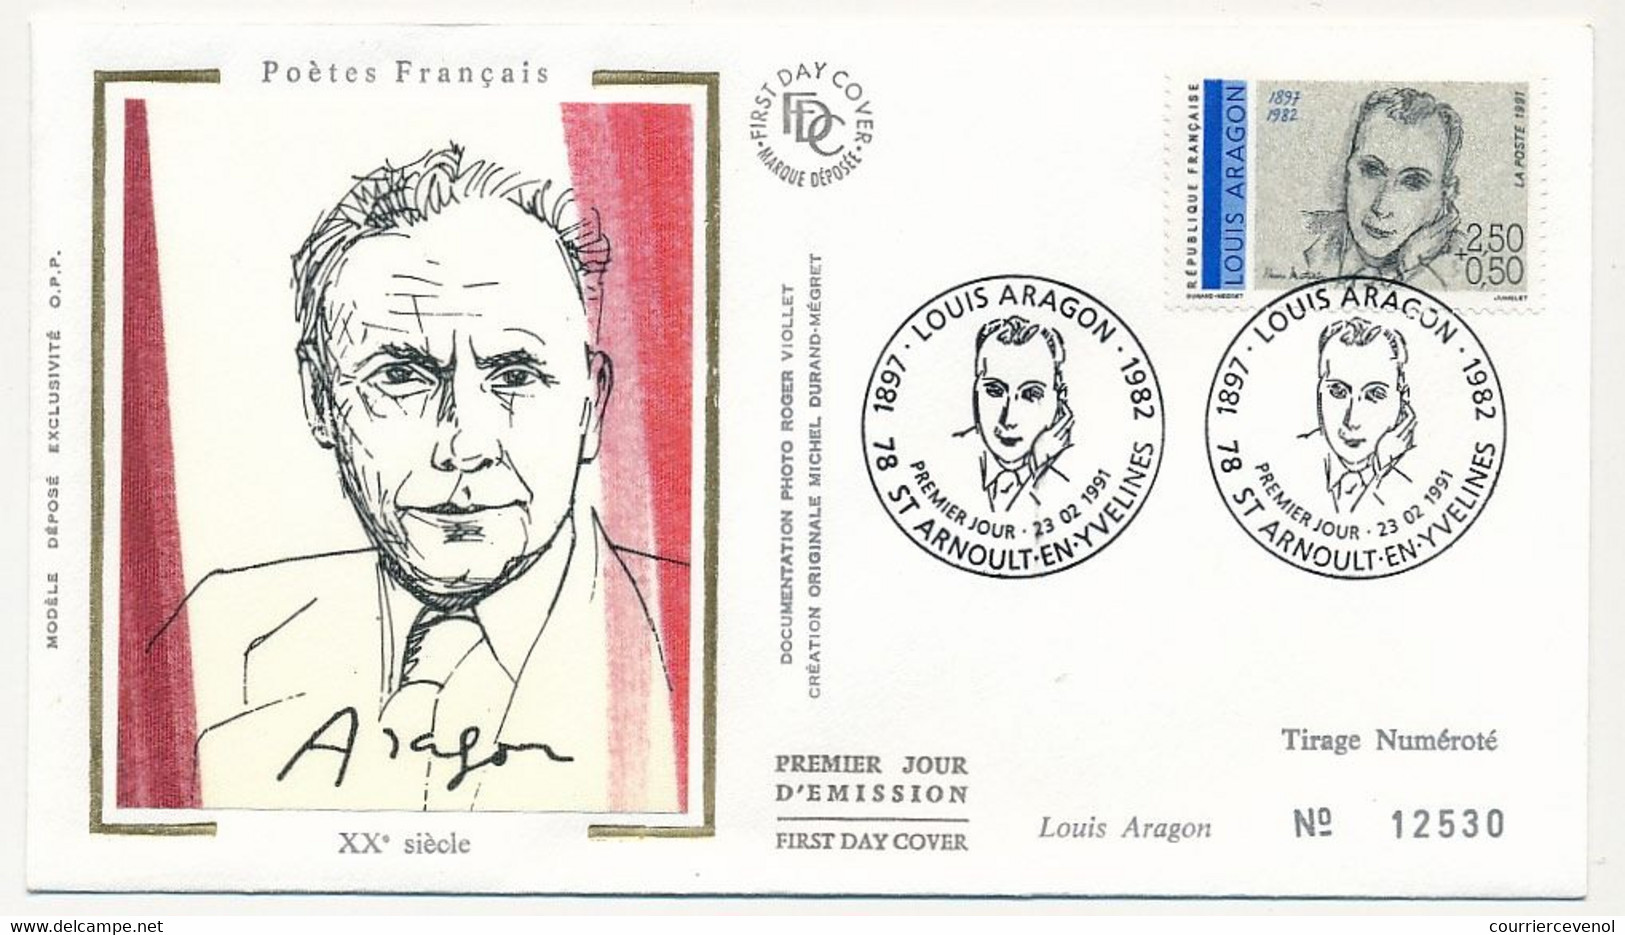 FRANCE - 6 Enveloppes FDC Soie - Série "Poètes" - Eluard, Ponge, Aragon, Prévert, Char, Breton - 23/02/1991 - 1990-1999